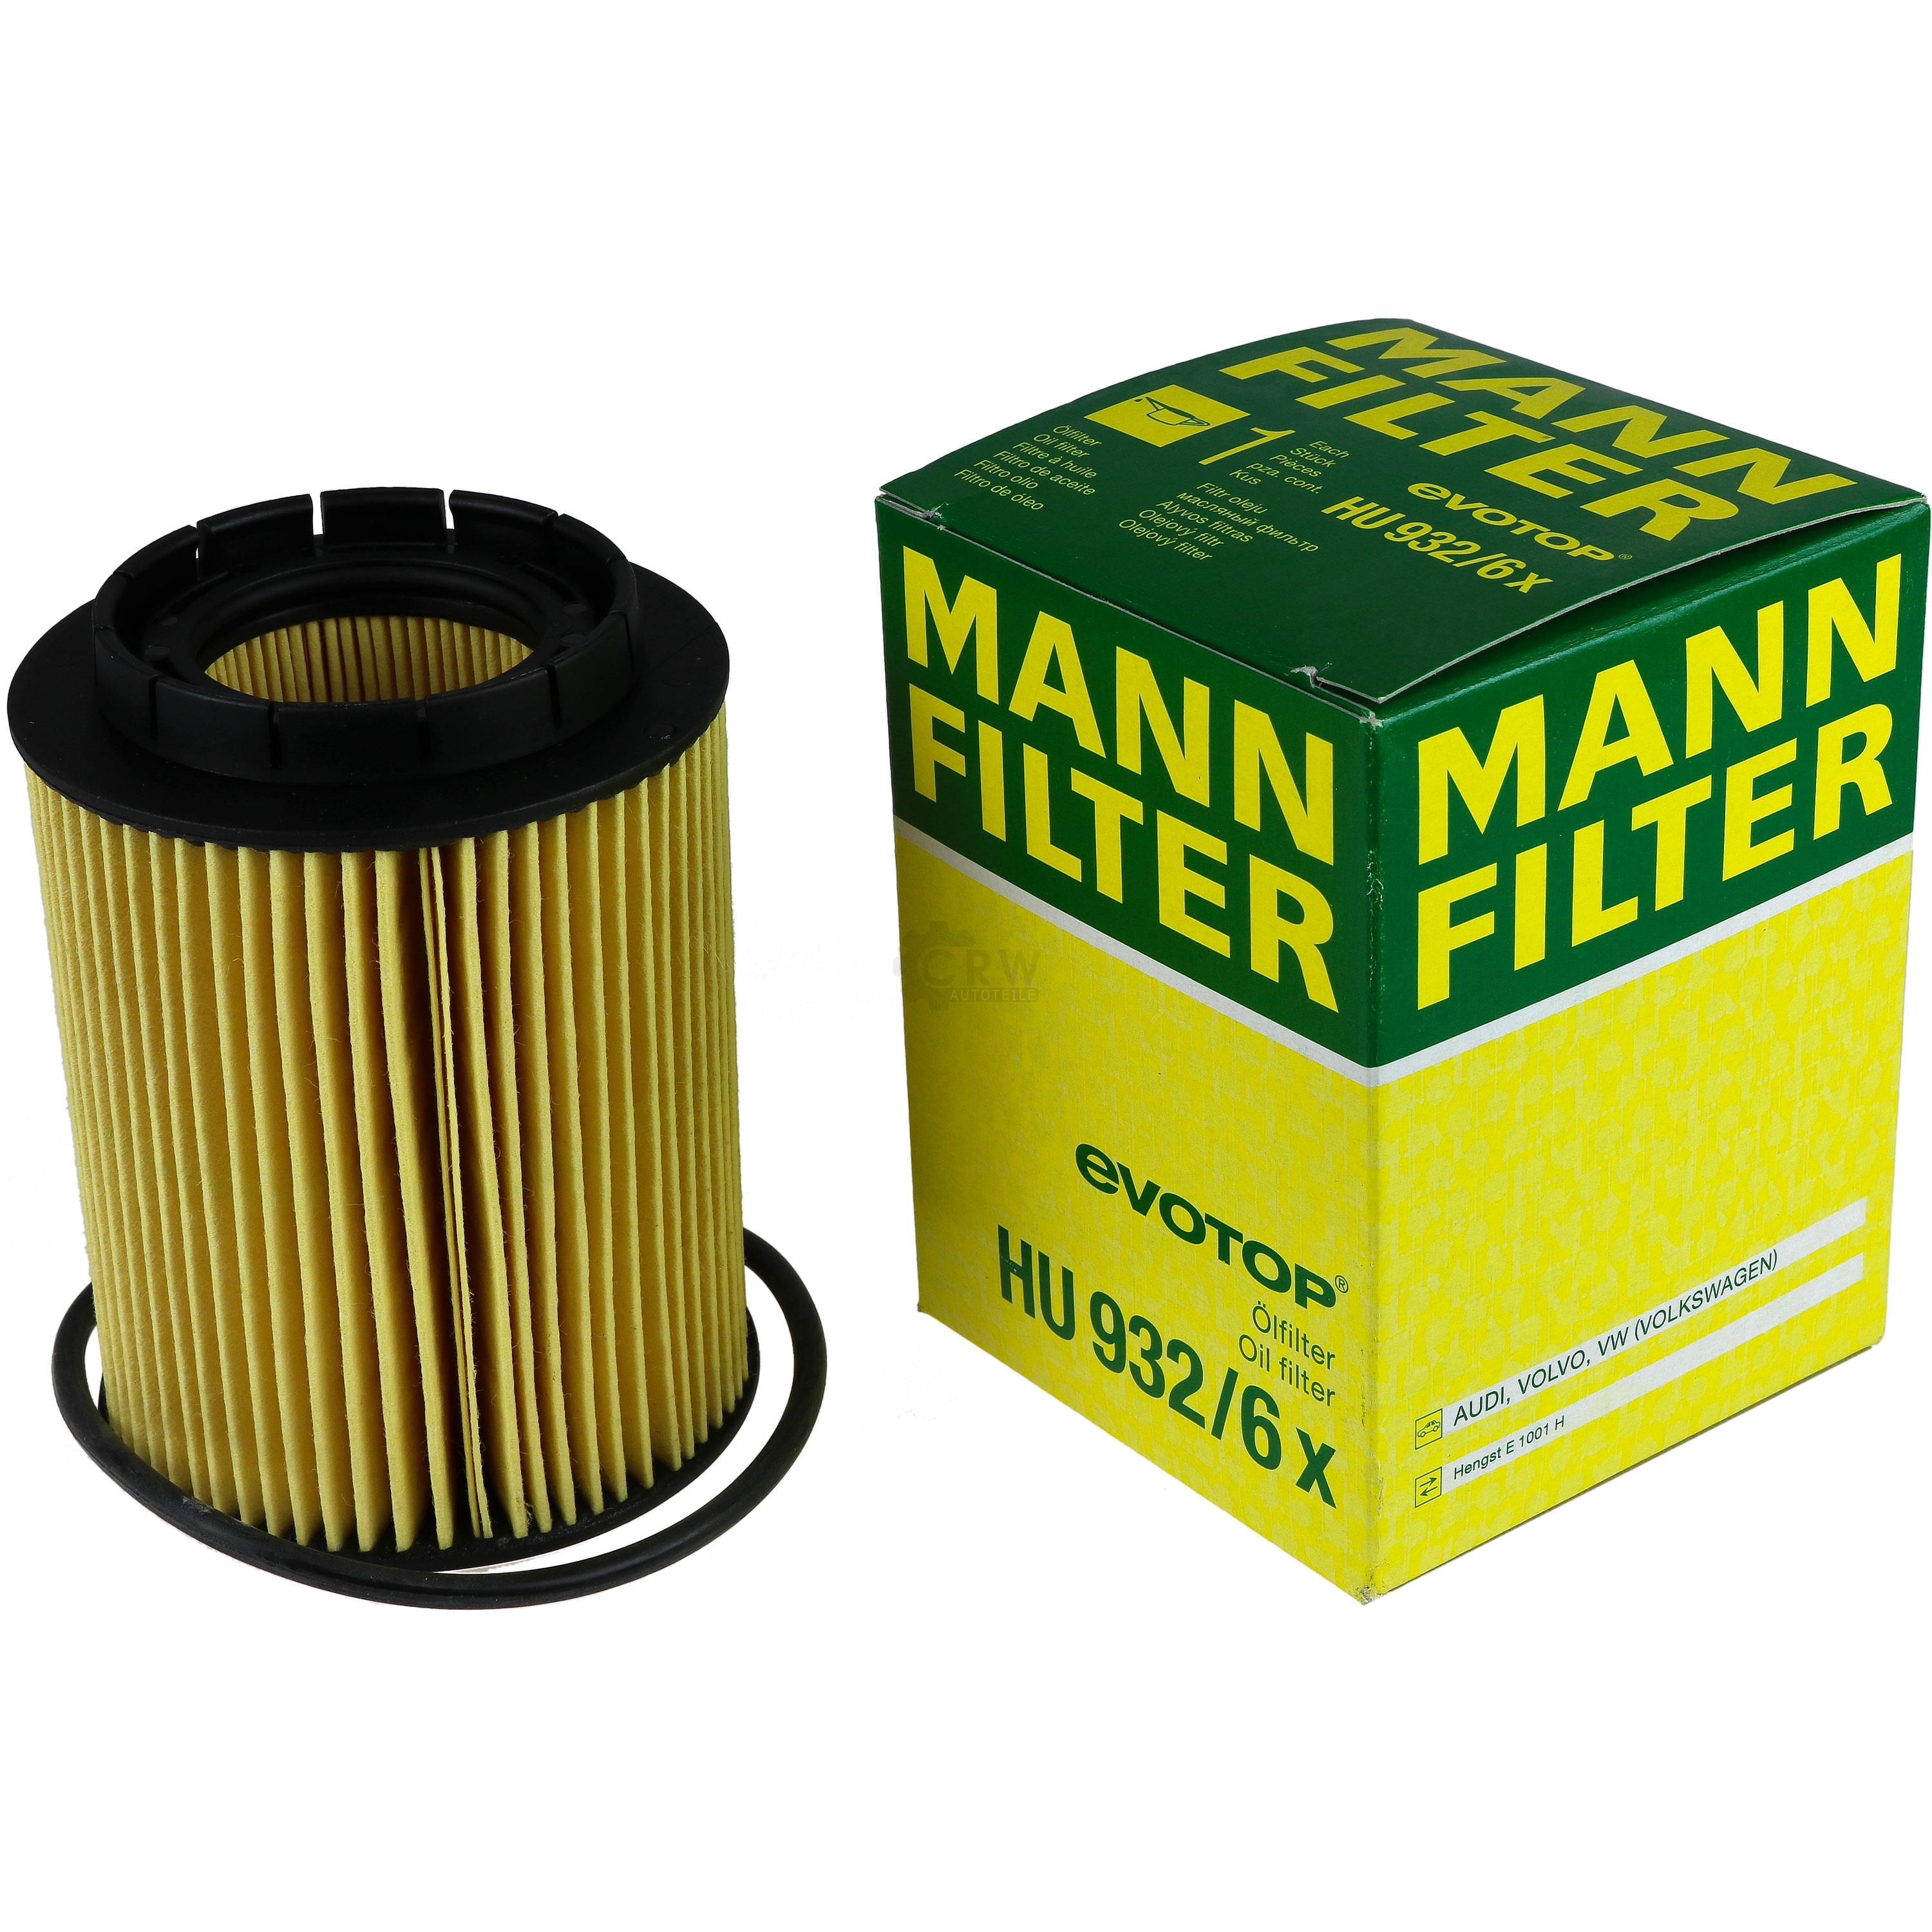 MANN-FILTER Ölfilter HU 932/6 x Oil Filter